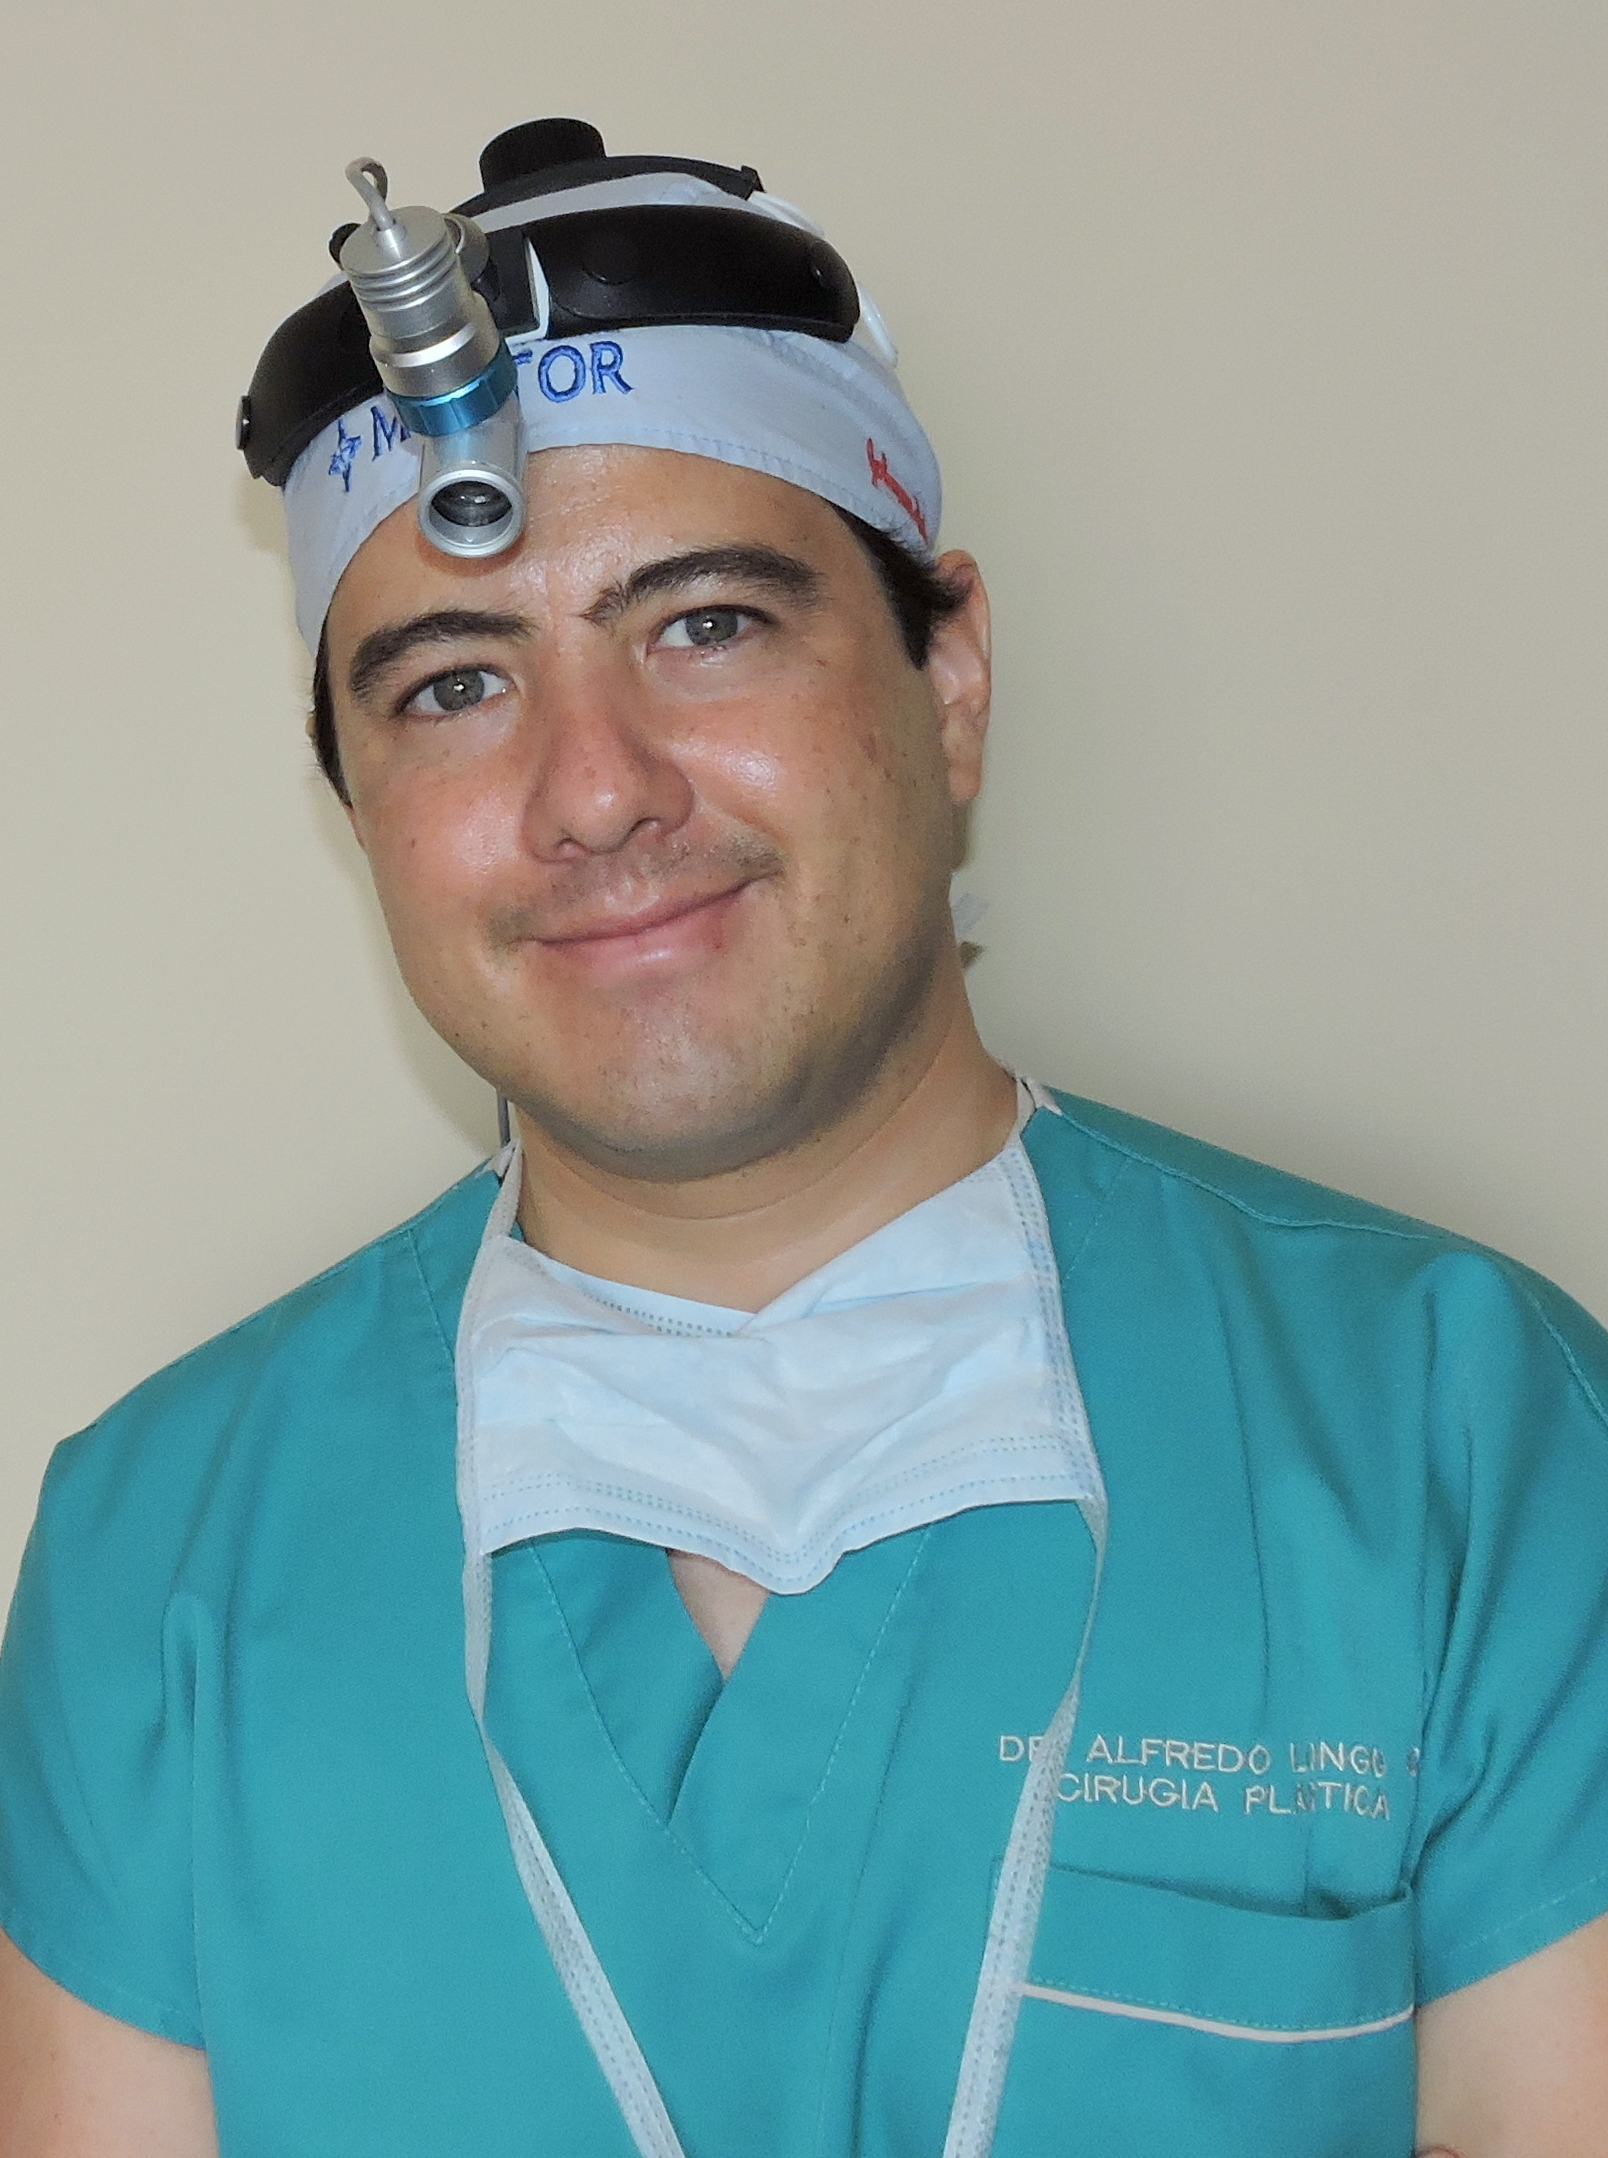 Dr. Alfredo Longo, Cirugía Plástica en Guatemala